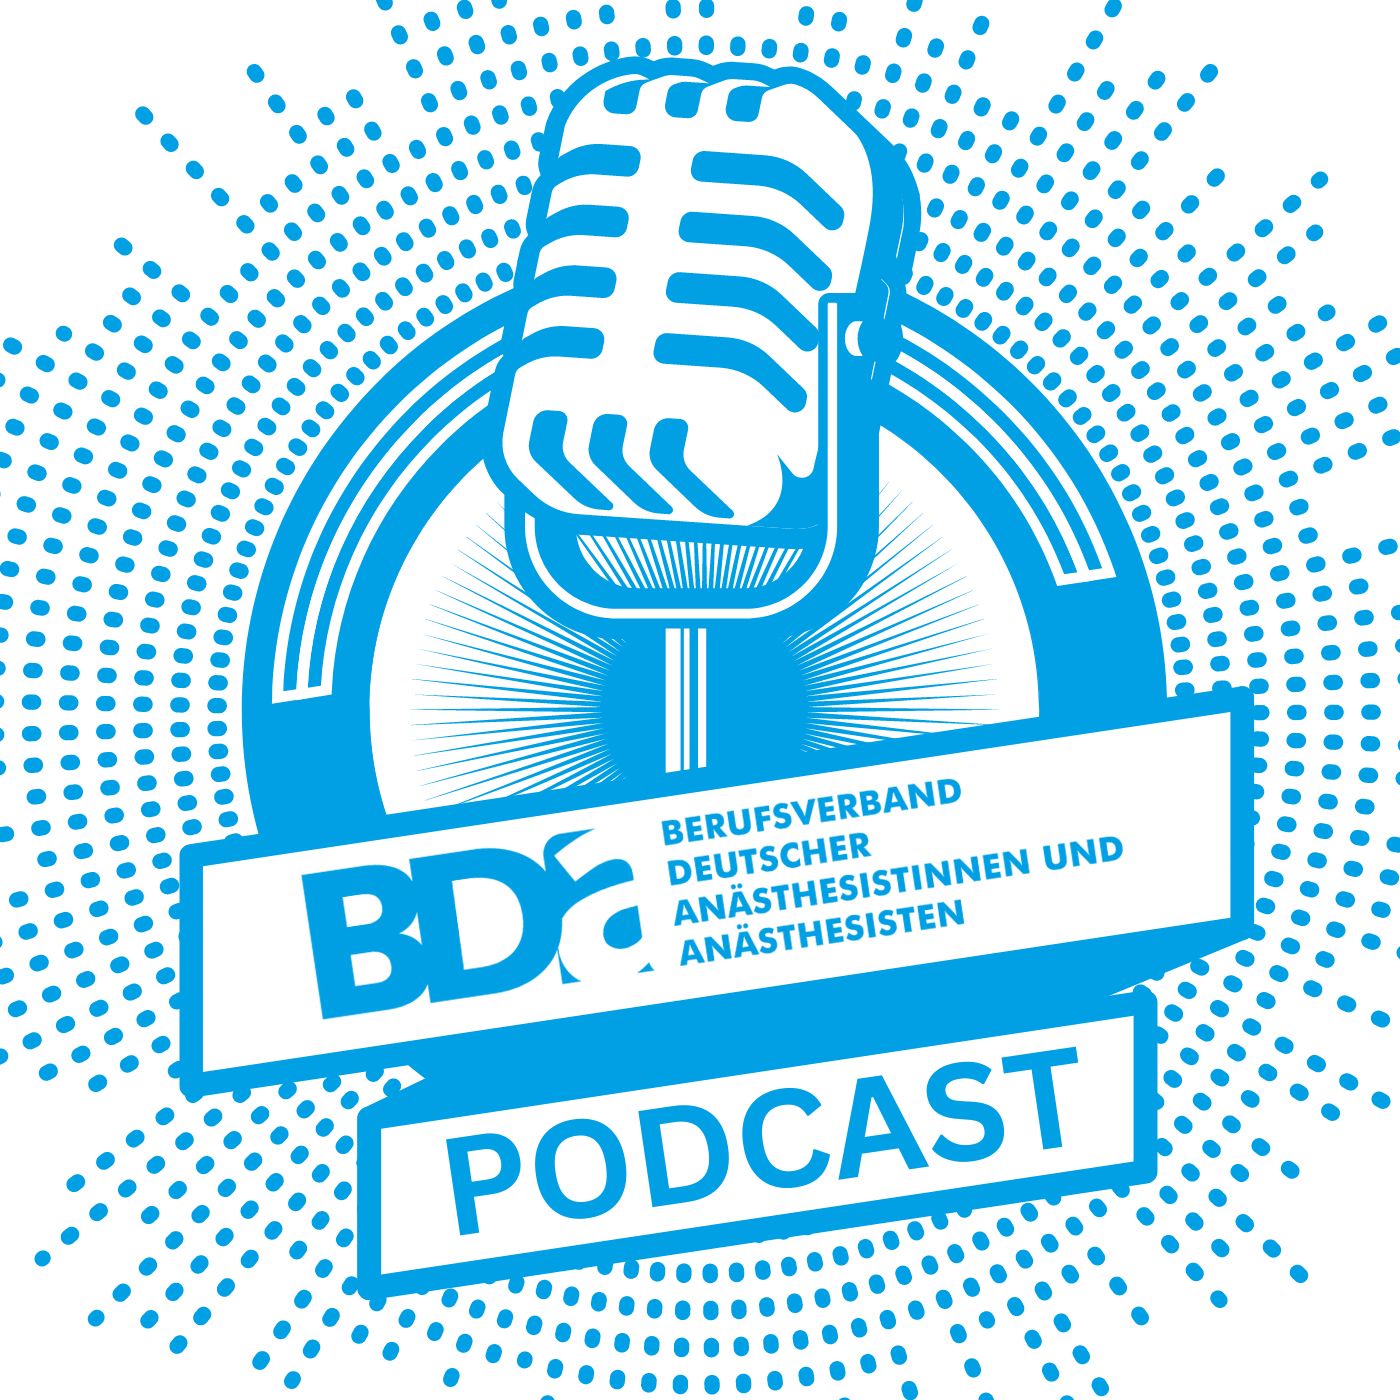 BDA-Podcast - Berufsverband Deutscher Anästhesistinnen und Anästhesisten e.V.